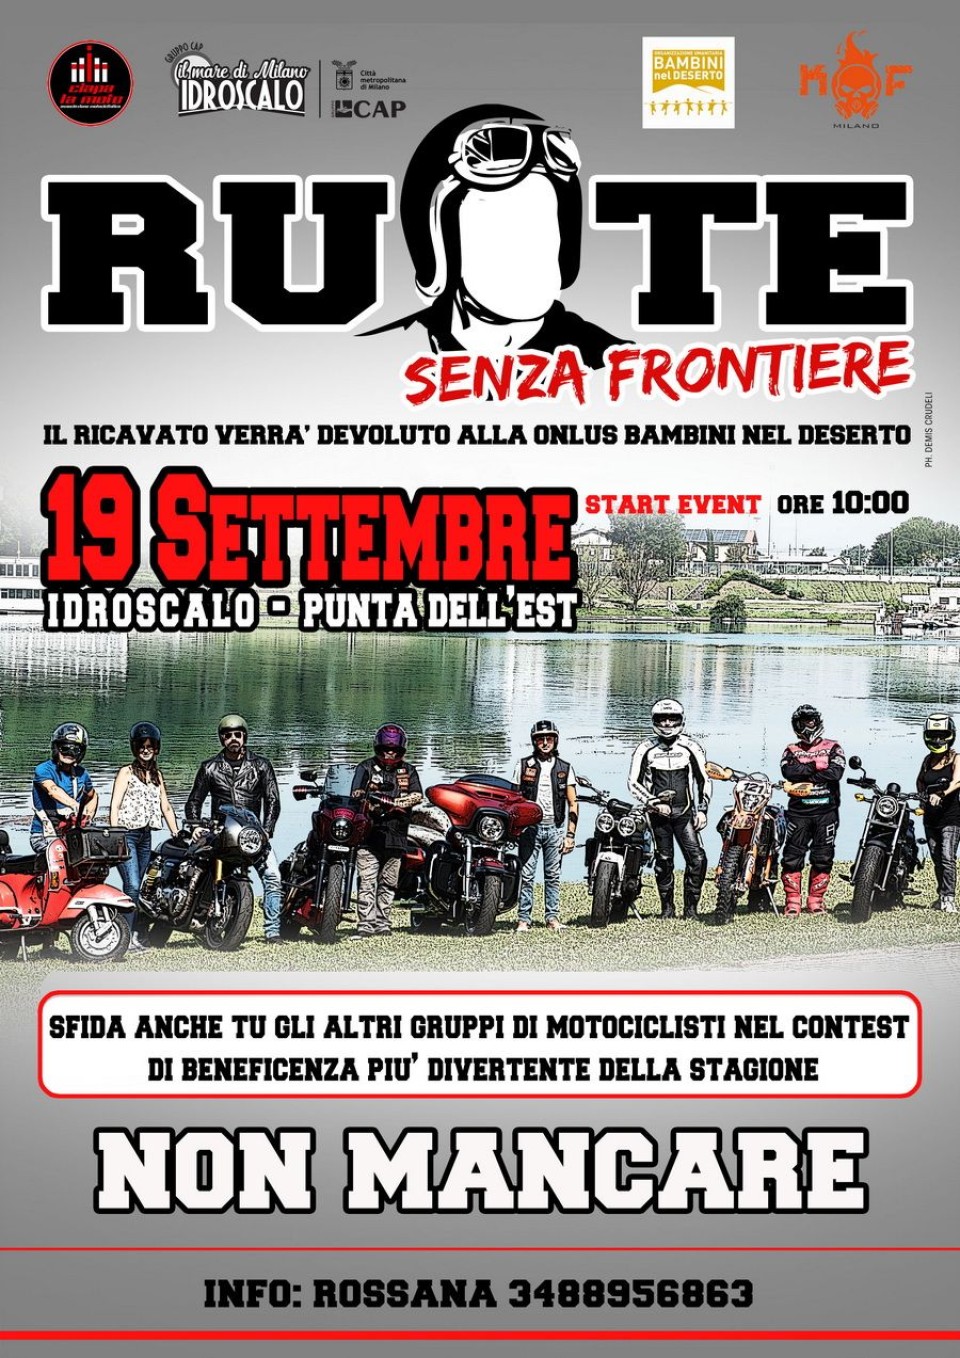 News: Ciapa La Moto - Sabato 19 Settembre ore 10.00 - Ruote Senza Frontiere